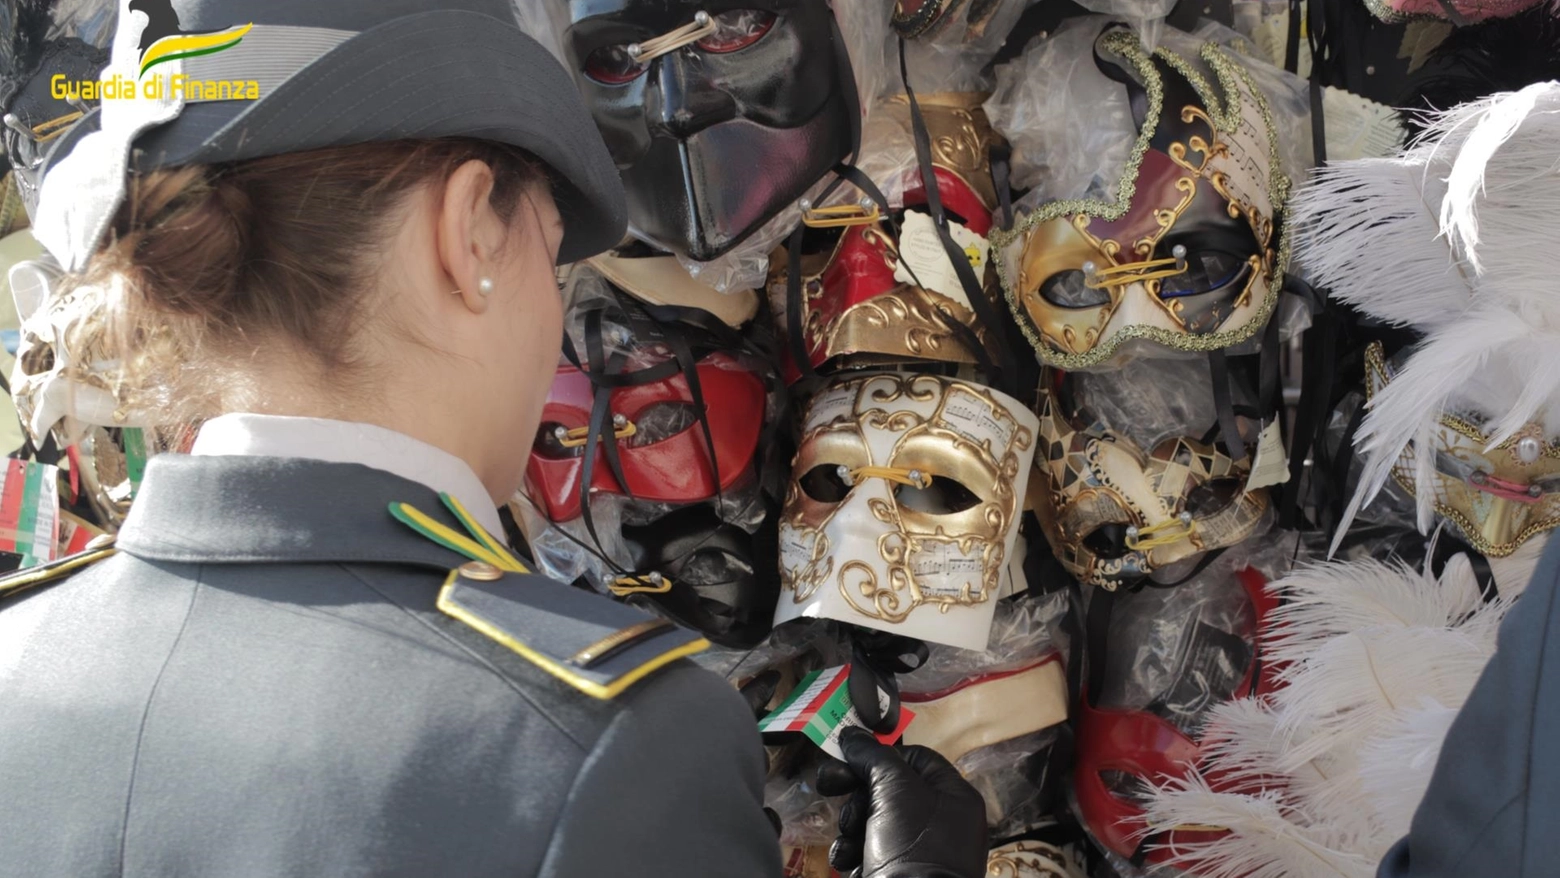 Carnevale di Venezia: irregolarità e pioggia di sanzioni alle feste in maschera nei palazzi nobiliari